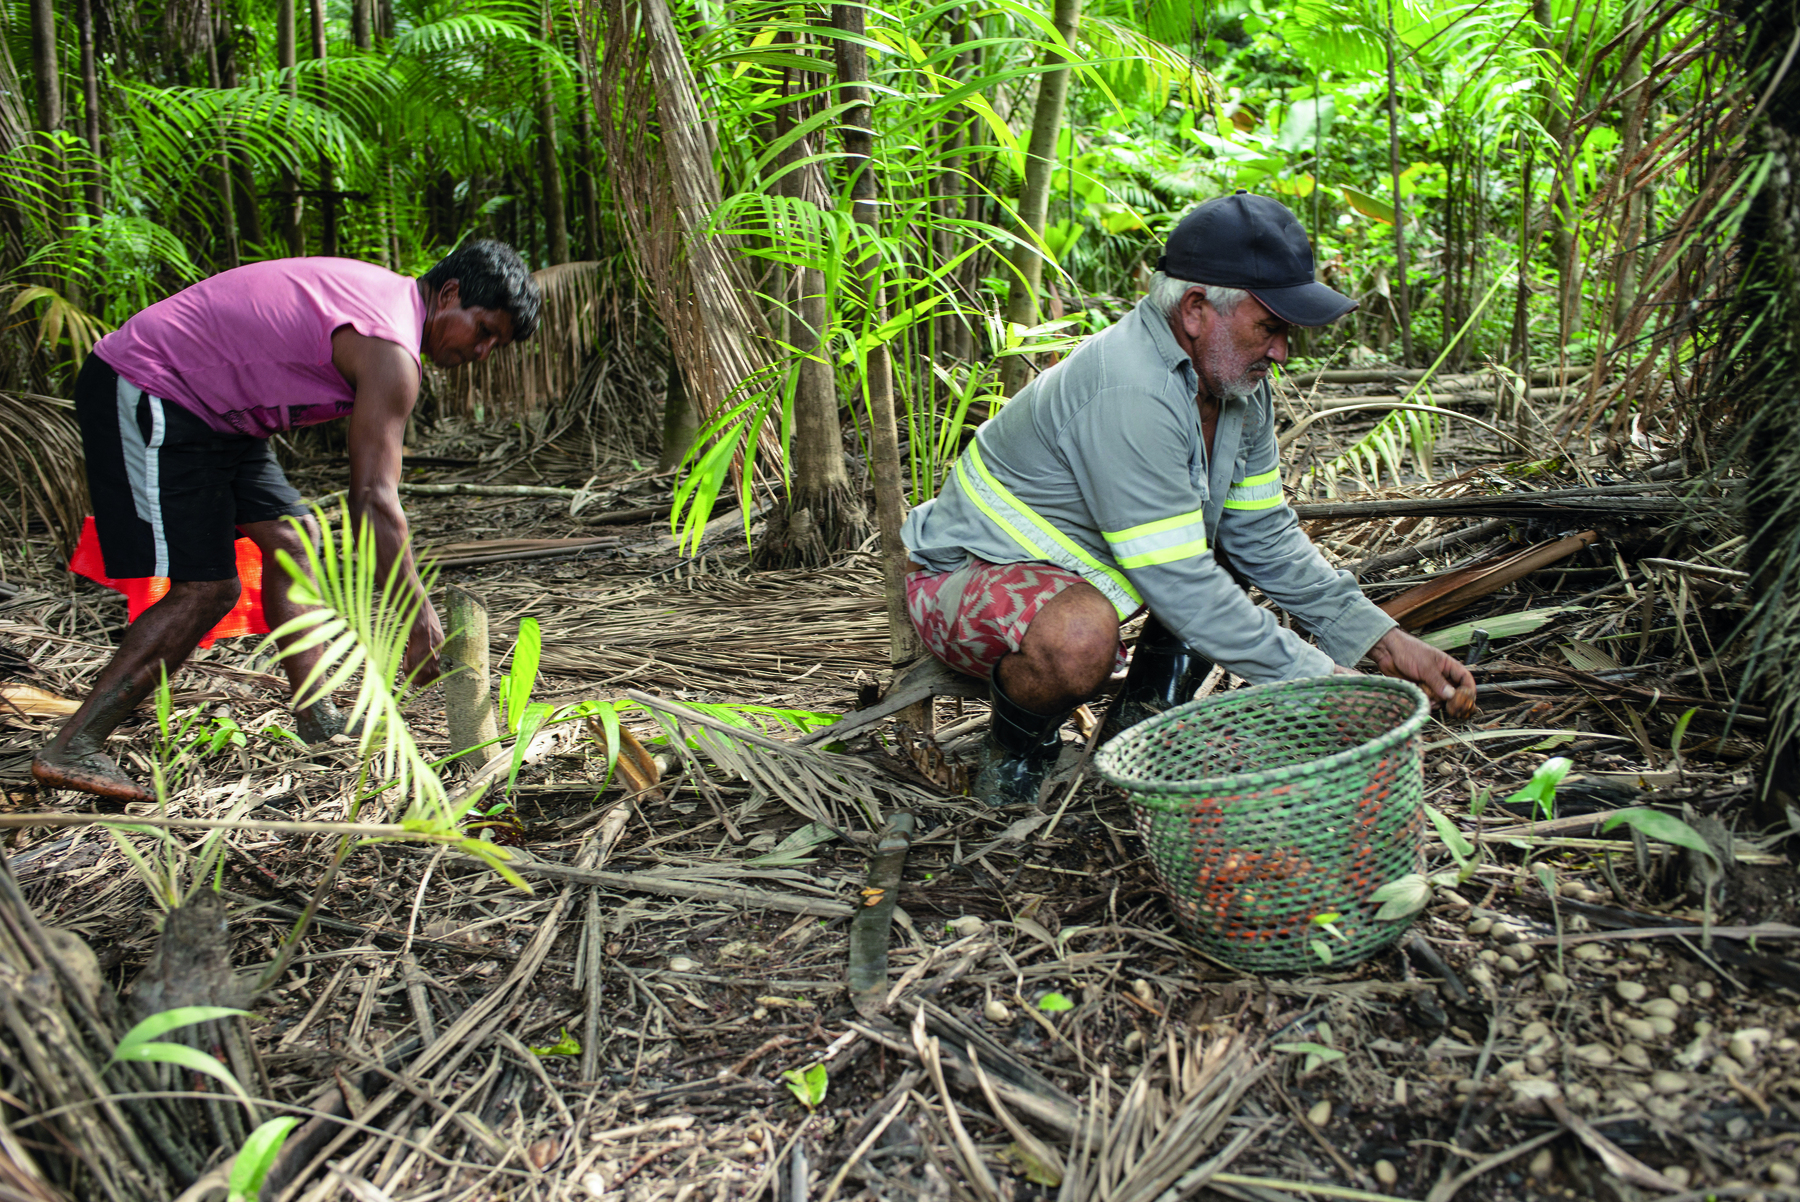 Fotografia. Dois homens trabalham agachados em um terreno com folhas secas de palmeiras cobrindo o solo. Em primeiro plano está uma cesta, usada para coleta. Ao fundo, vegetação verde.